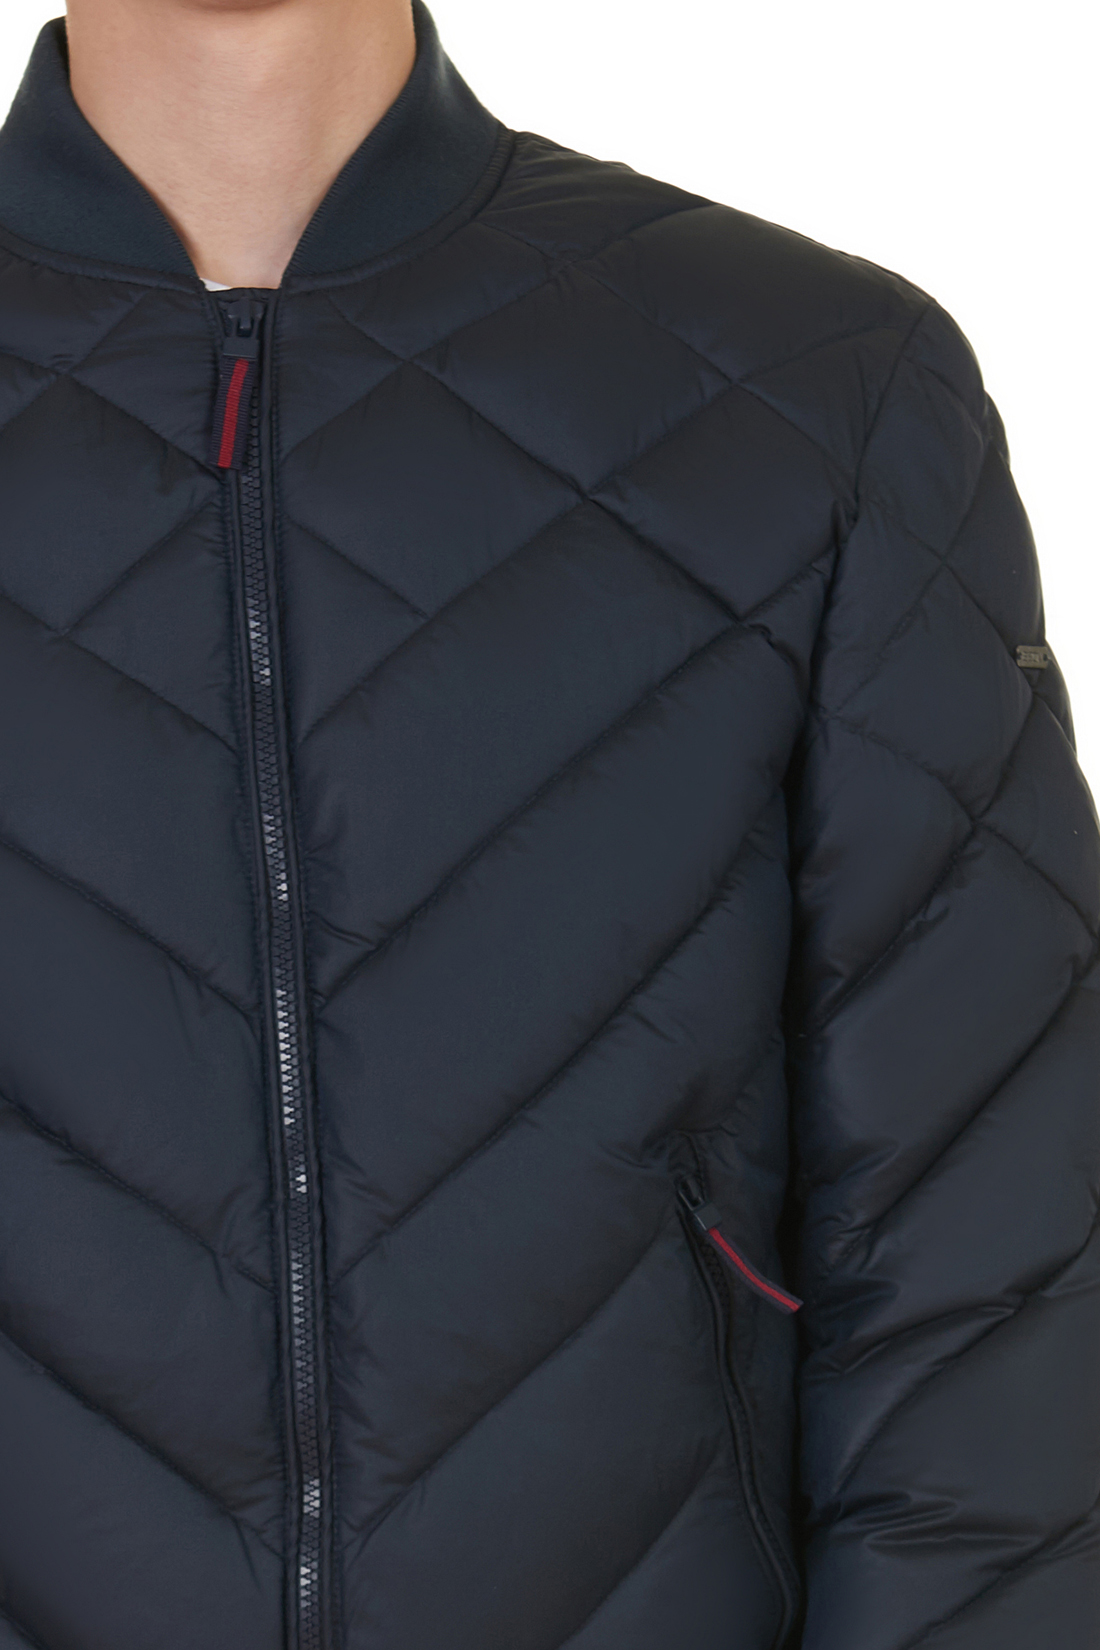 Дутая куртка-бомбер (арт. baon B537552), размер L, цвет синий Дутая куртка-бомбер (арт. baon B537552) - фото 4